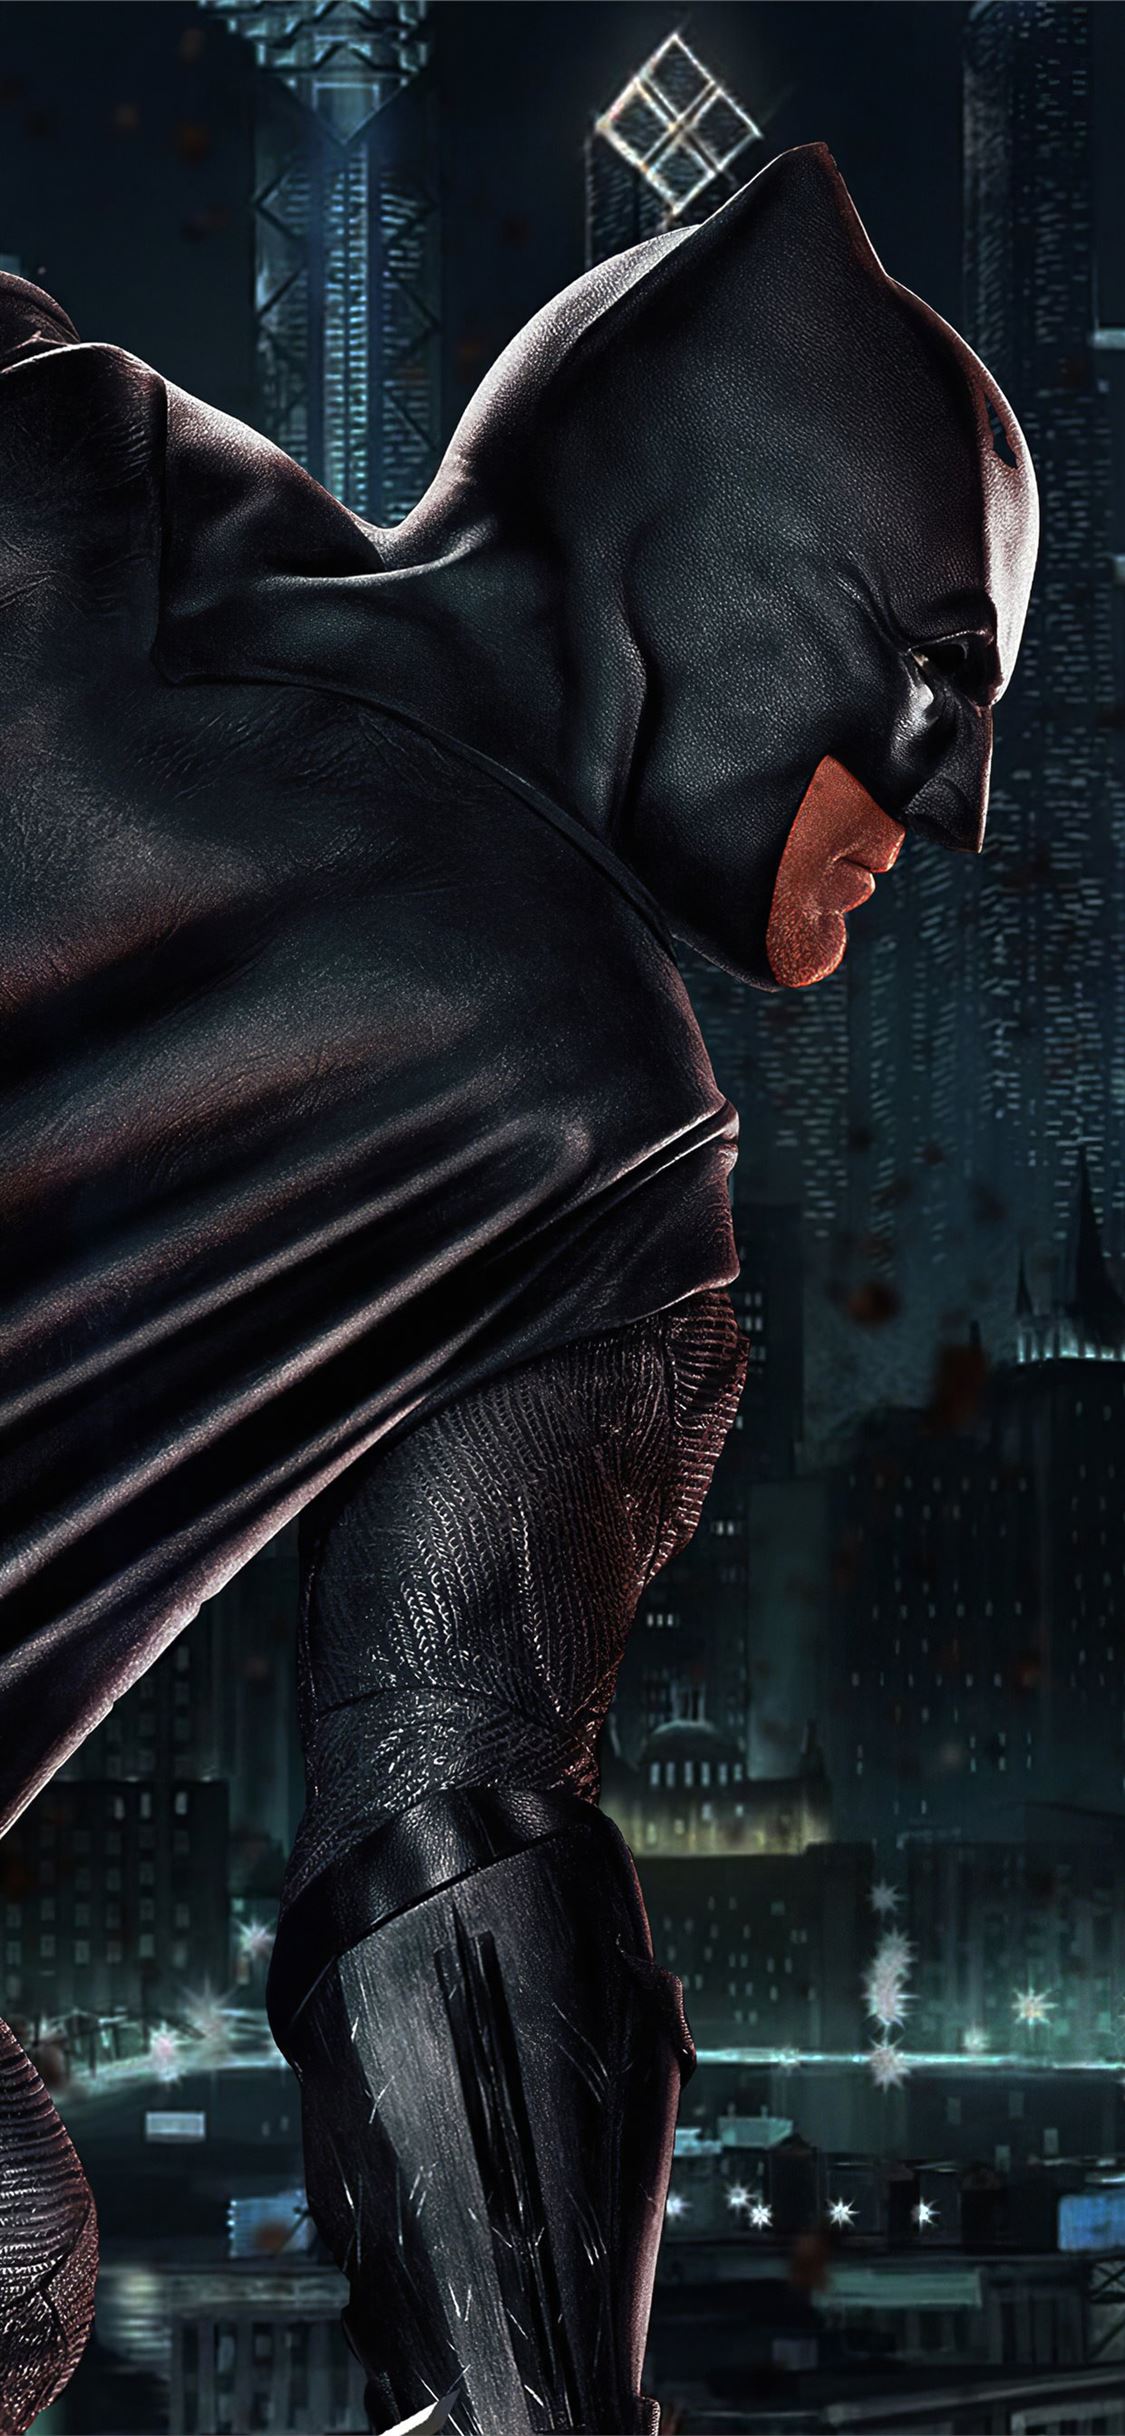 the batman deathstroke 4k iPhone X Wallpaper Free Download